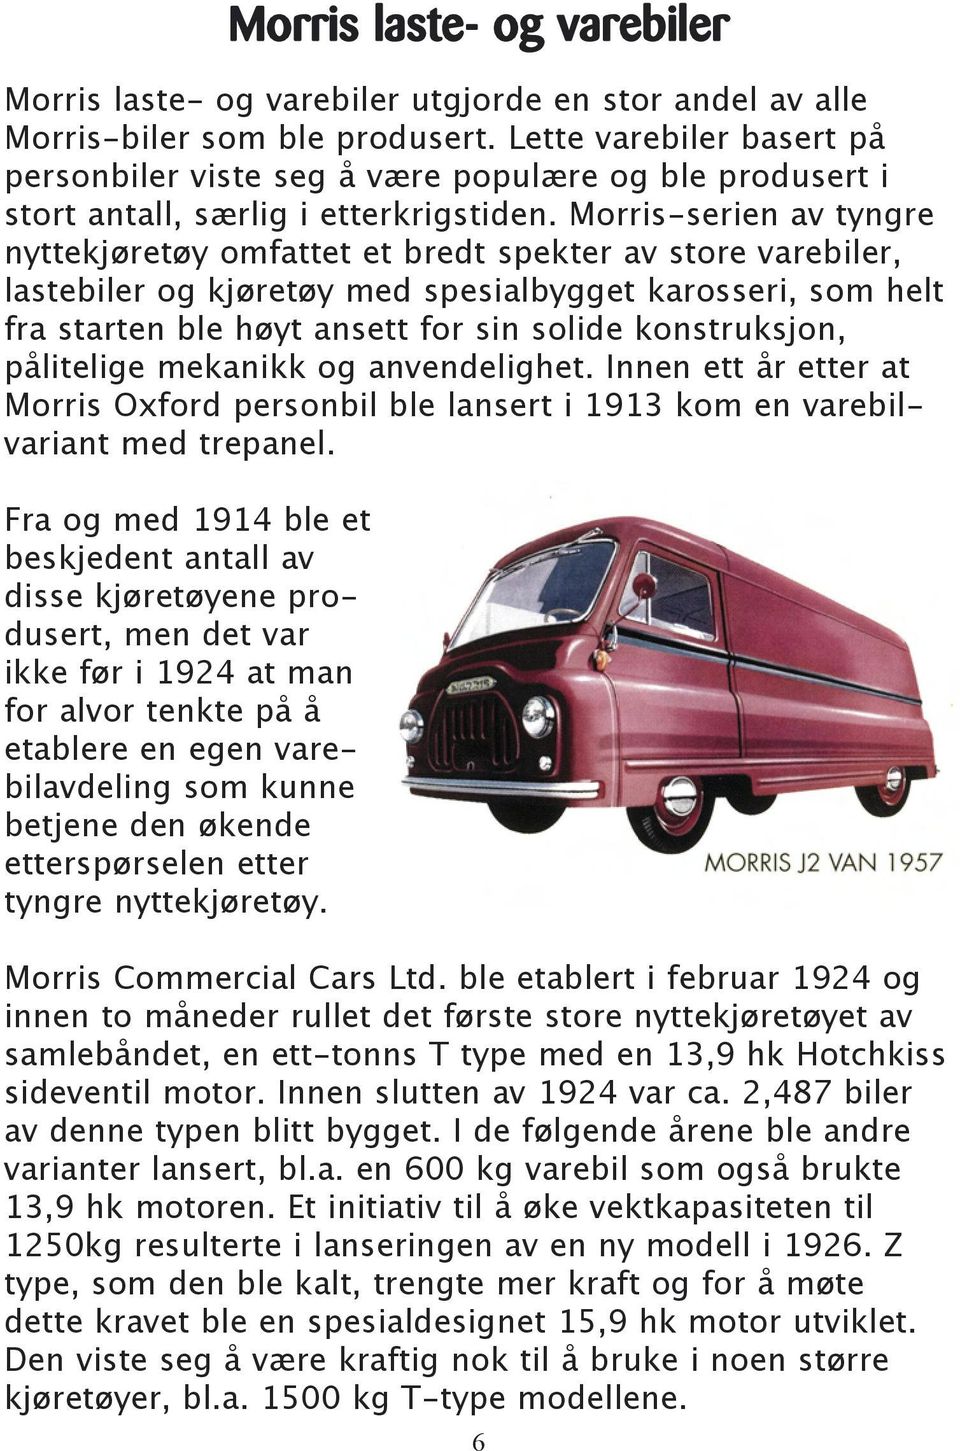 Morris-serien av tyngre nyttekjøretøy omfattet et bredt spekter av store varebiler, lastebiler og kjøretøy med spesialbygget karosseri, som helt fra starten ble høyt ansett for sin solide